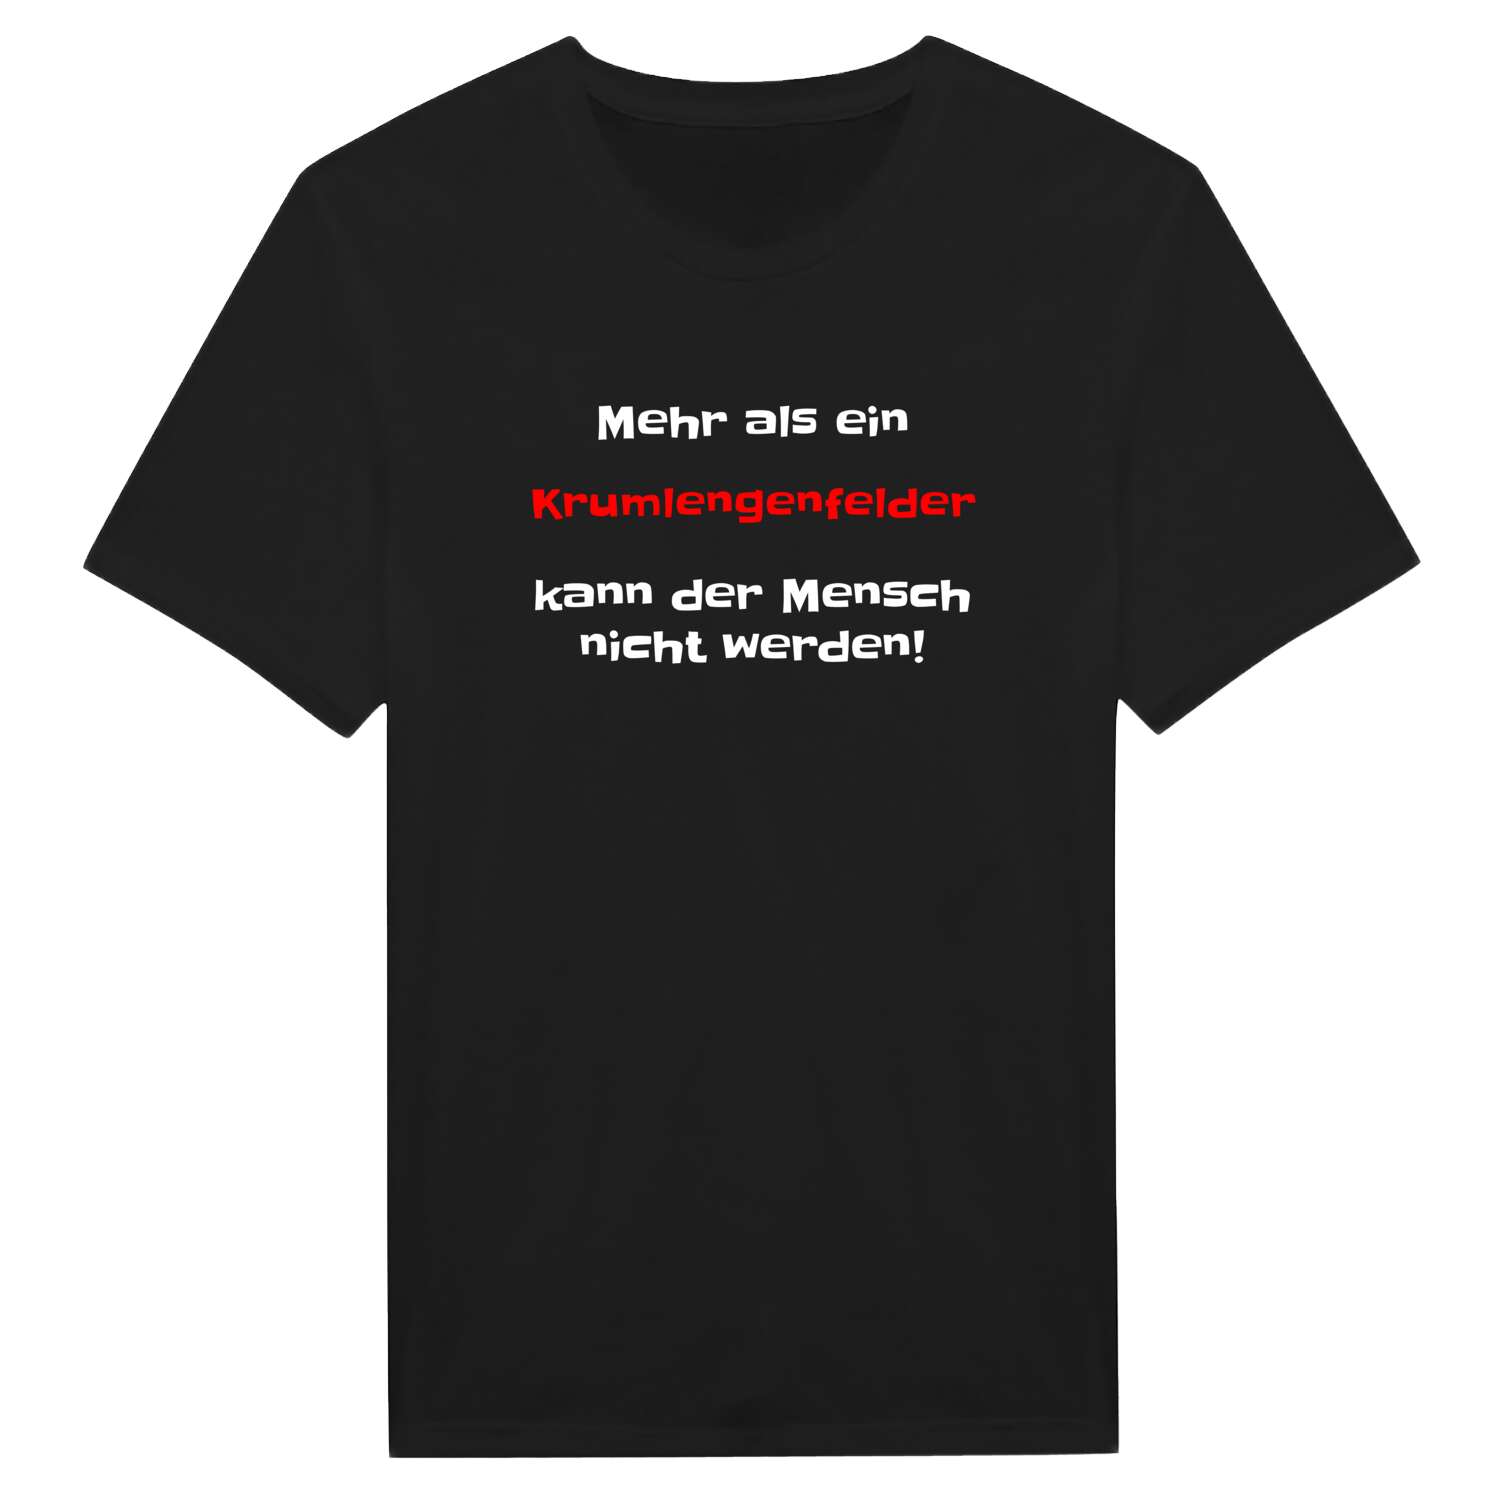 Krumlengenfeld T-Shirt »Mehr als ein«